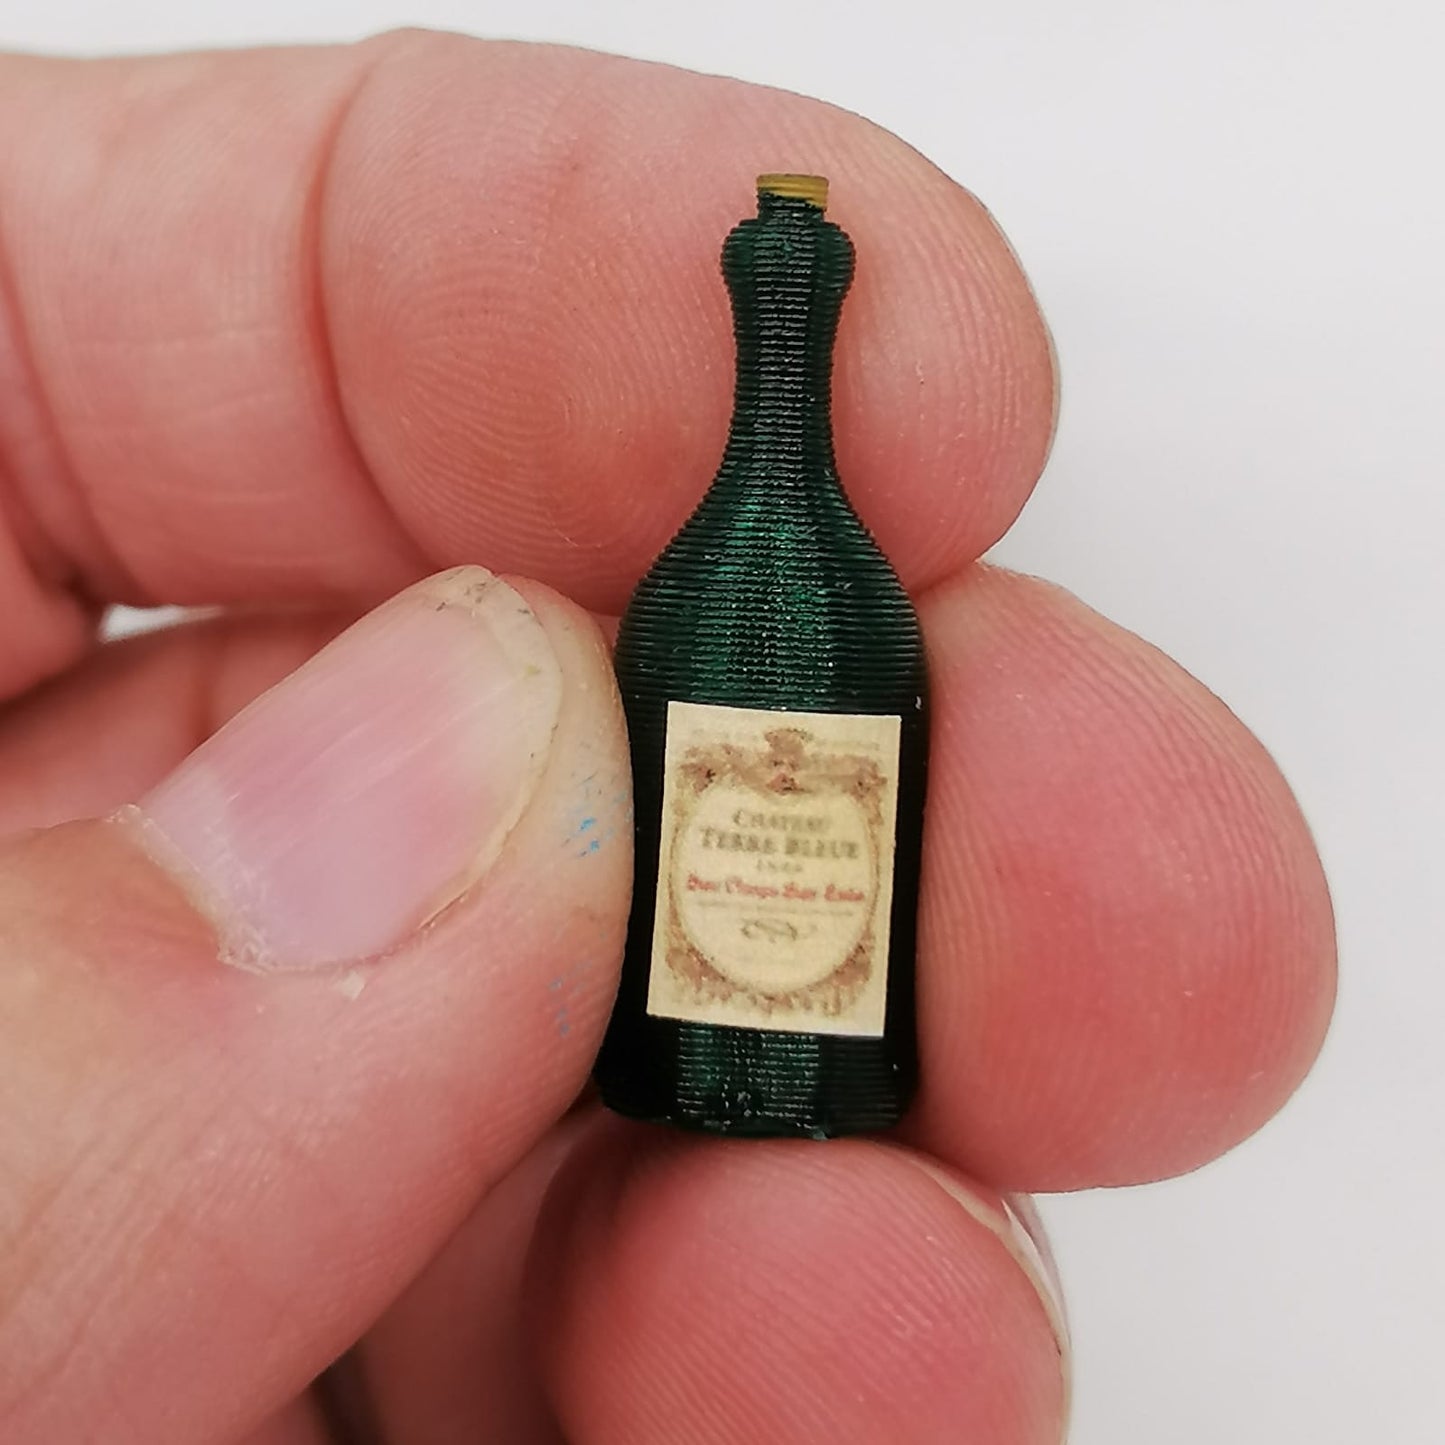 Miniaturas en botellas de vino a escala 1:12